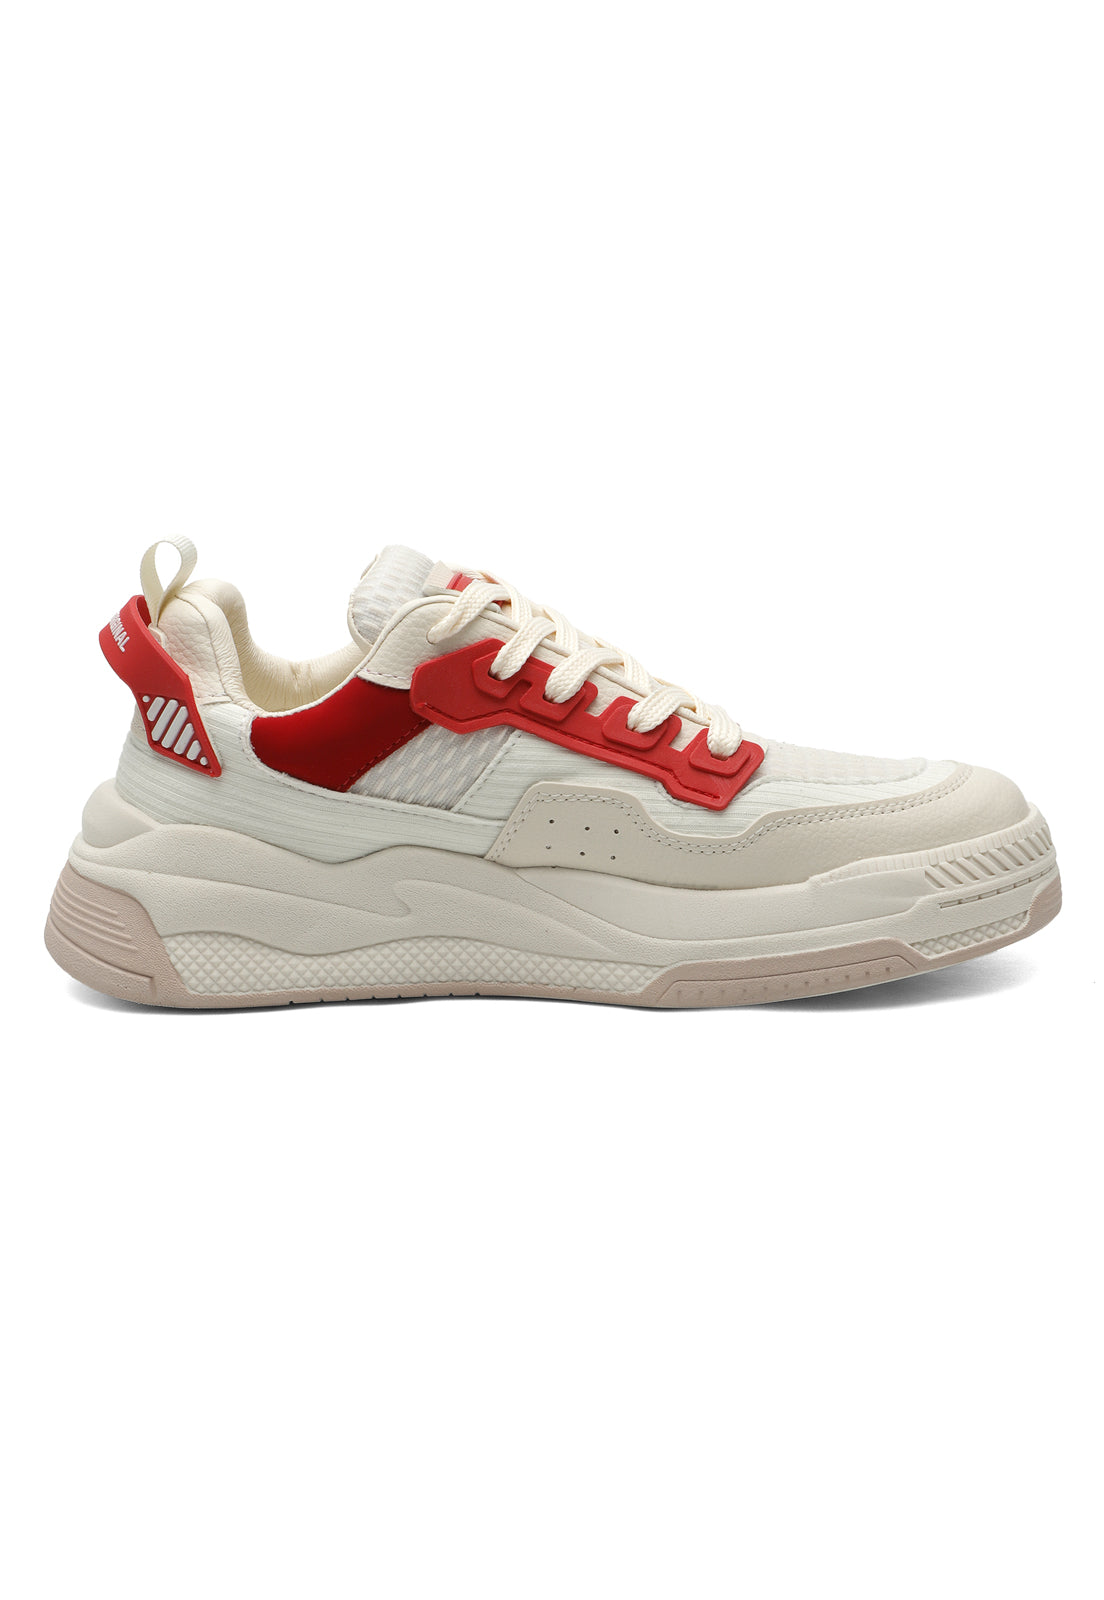 Tenis Sneakers Dama Beige-Rojo Tellenzi D711